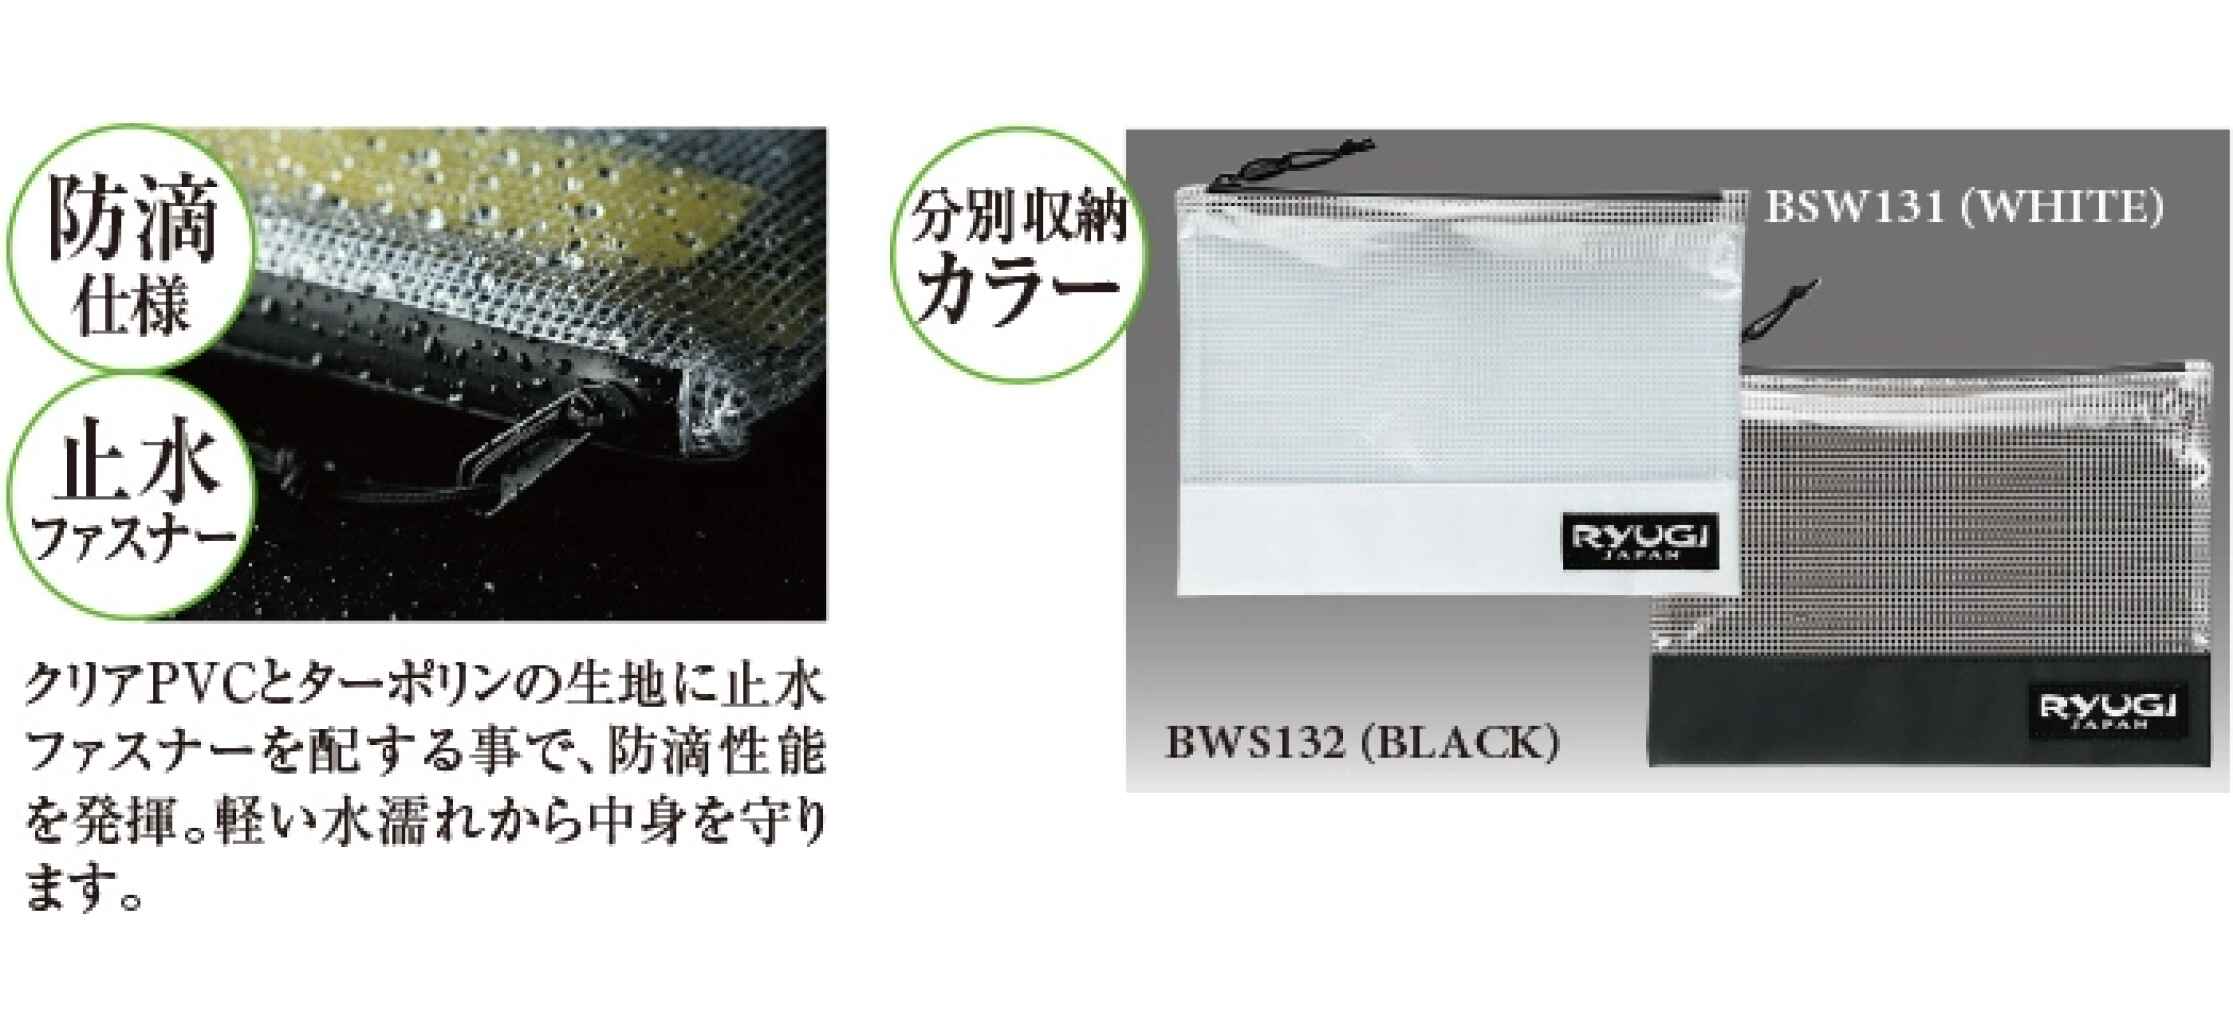 Ryugi Worm Stocker M White